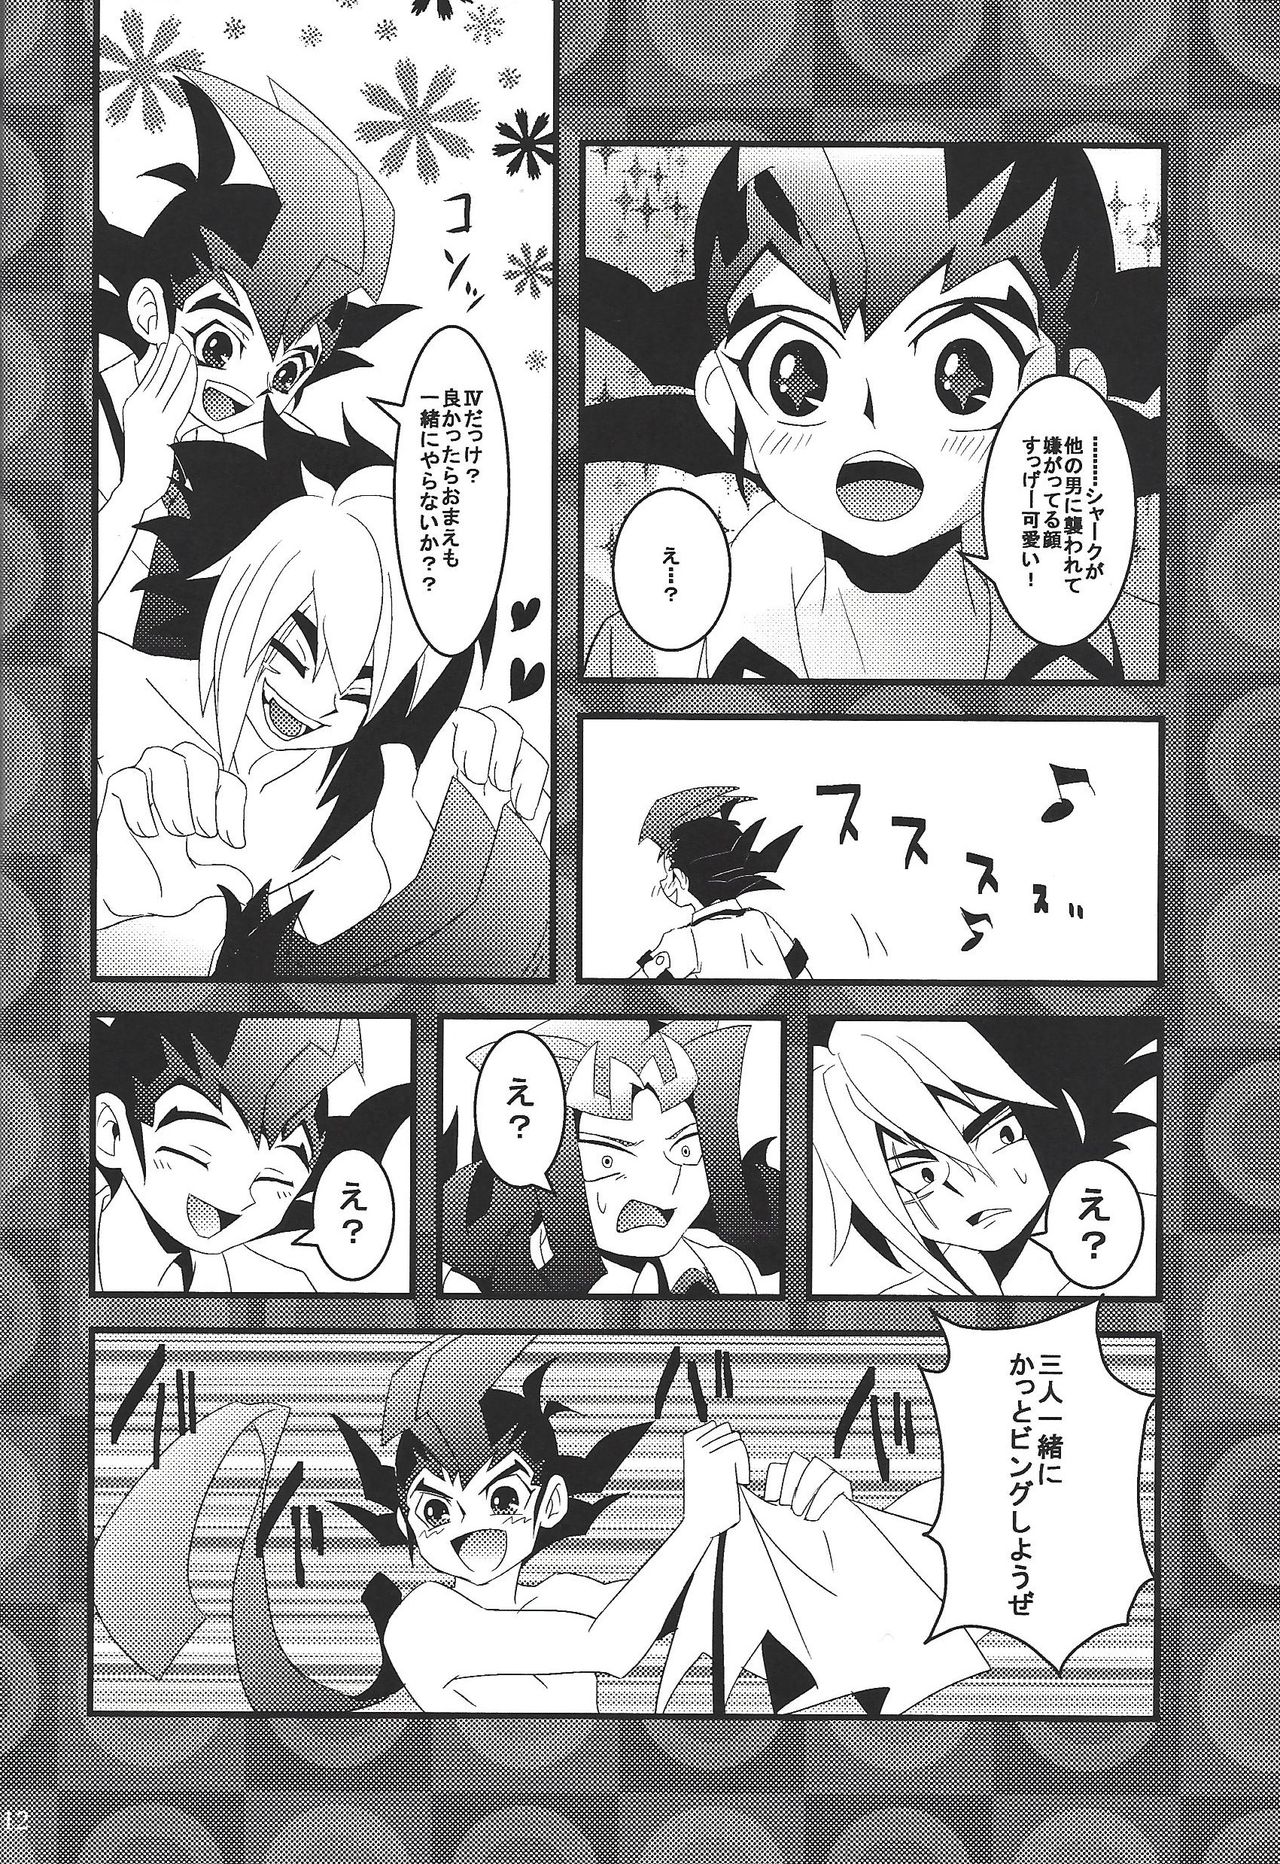 [Amanatsu ku~orite (Amu)] Riajū shi teru ryōga o ne totte ganmen kijō shite moraitai IV no hon (Yu-Gi-Oh! Zexal) page 11 full